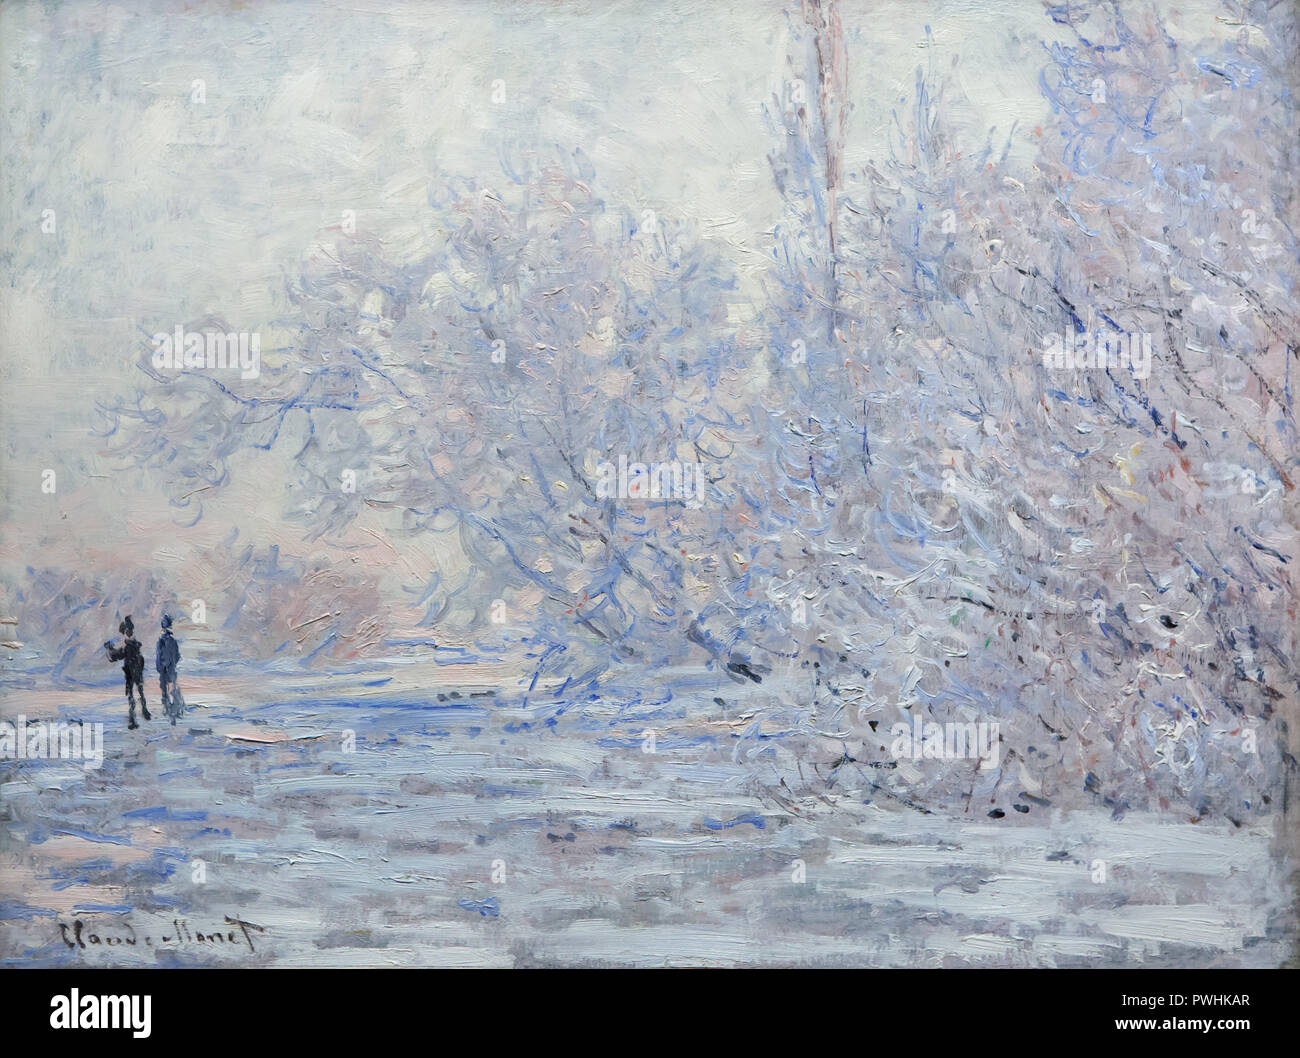 Gemälde "Frost in Giverny" (1889) des Französischen impressionistischen Malers Claude Monet auf Anzeige an seine retrospektive Ausstellung in der Albertina in Wien, Österreich. Die Ausstellung, die der Gründer der Französischen impressionistischen Malerei wird bis zum 6. Januar 2019 gewidmet. Stockfoto